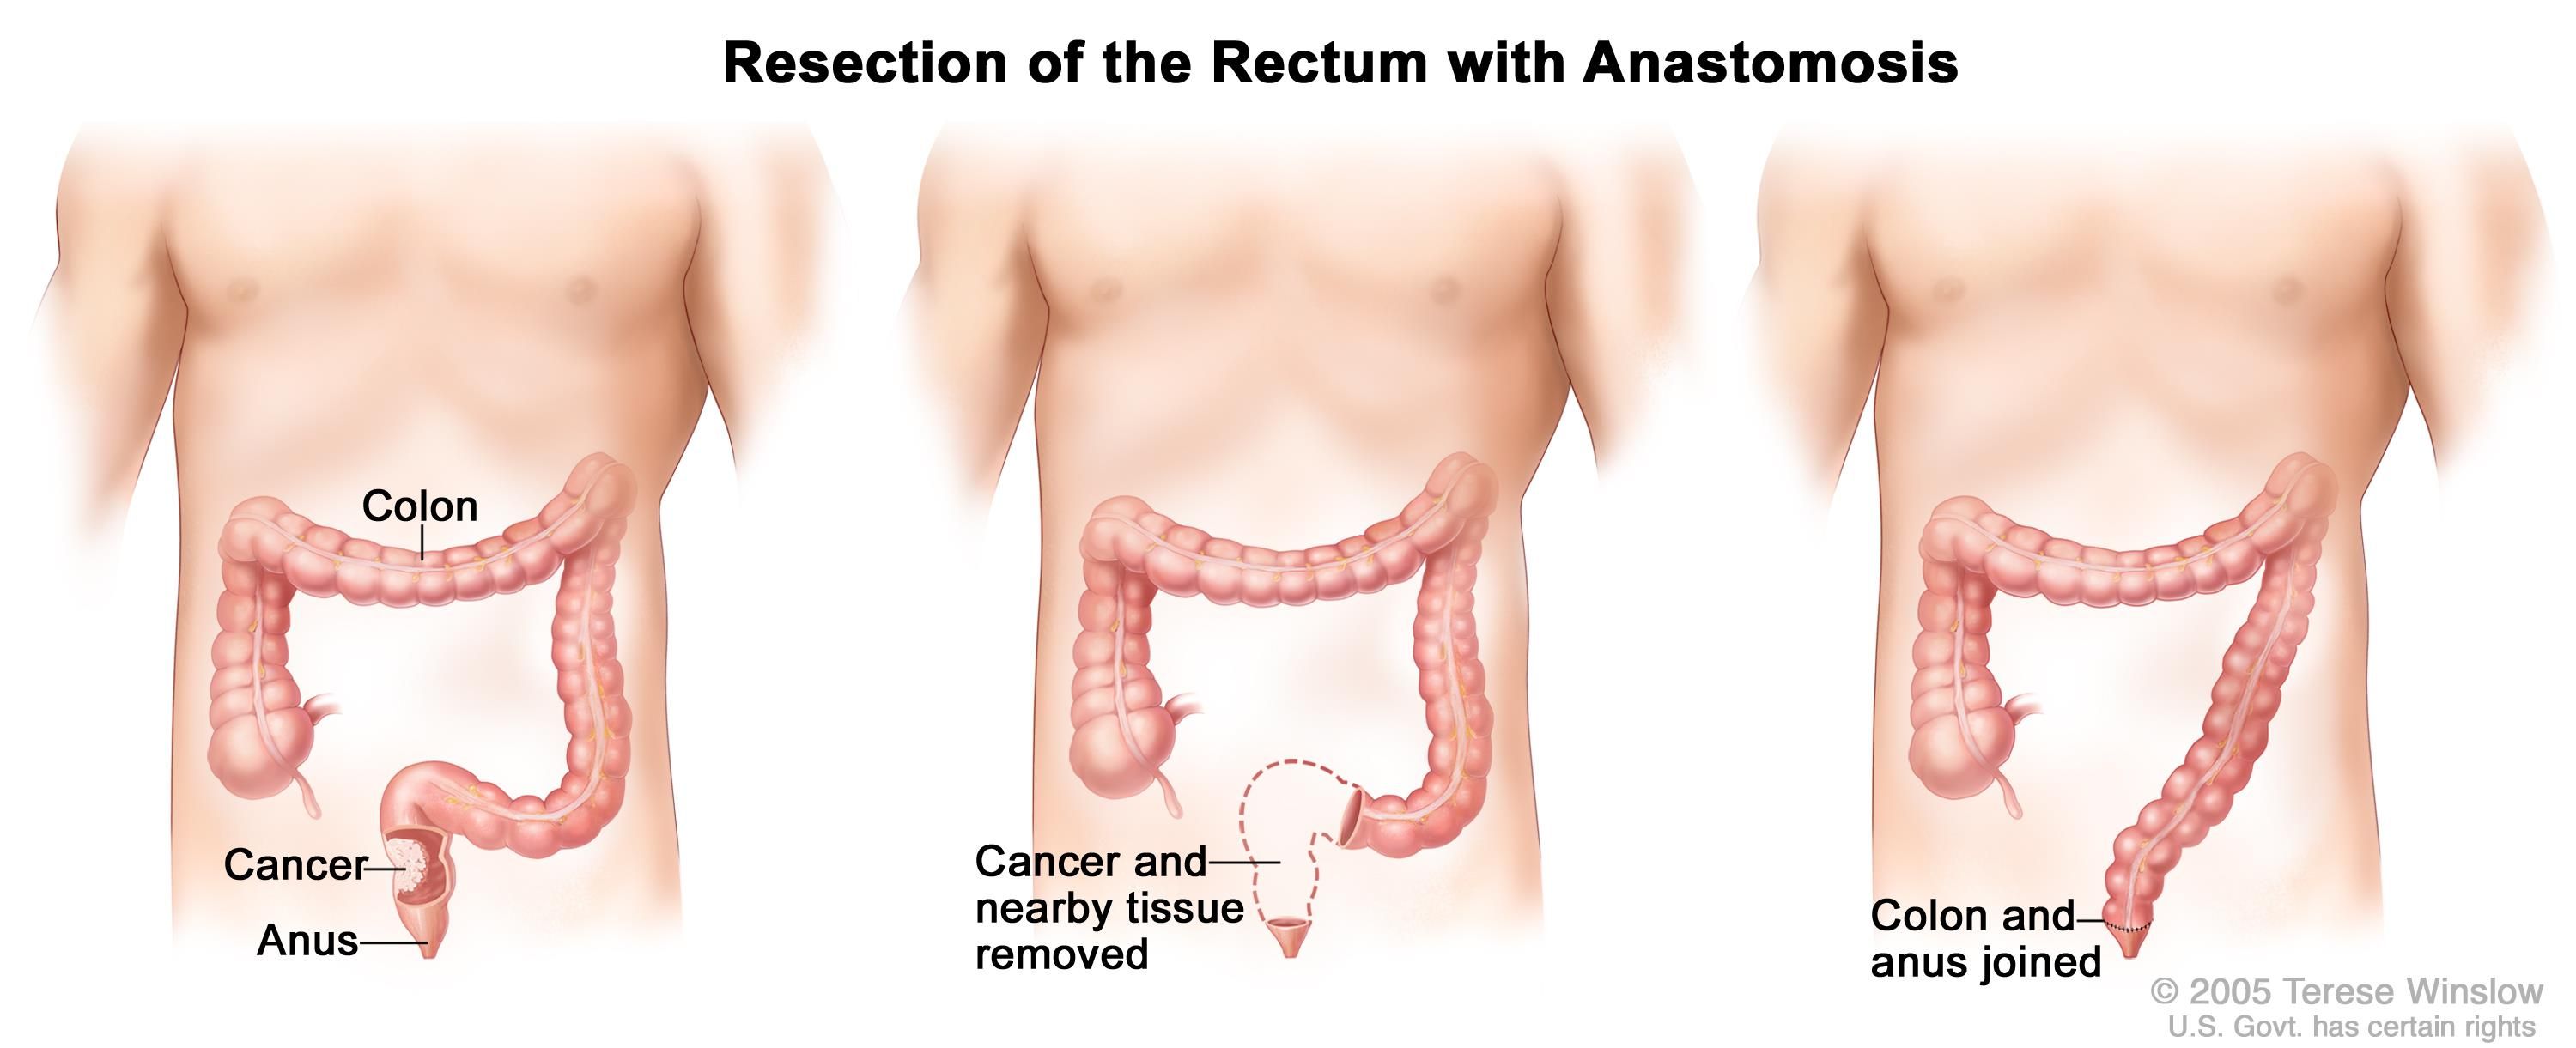 Sugar P. reccomend Surgery of the anus rectum and colon